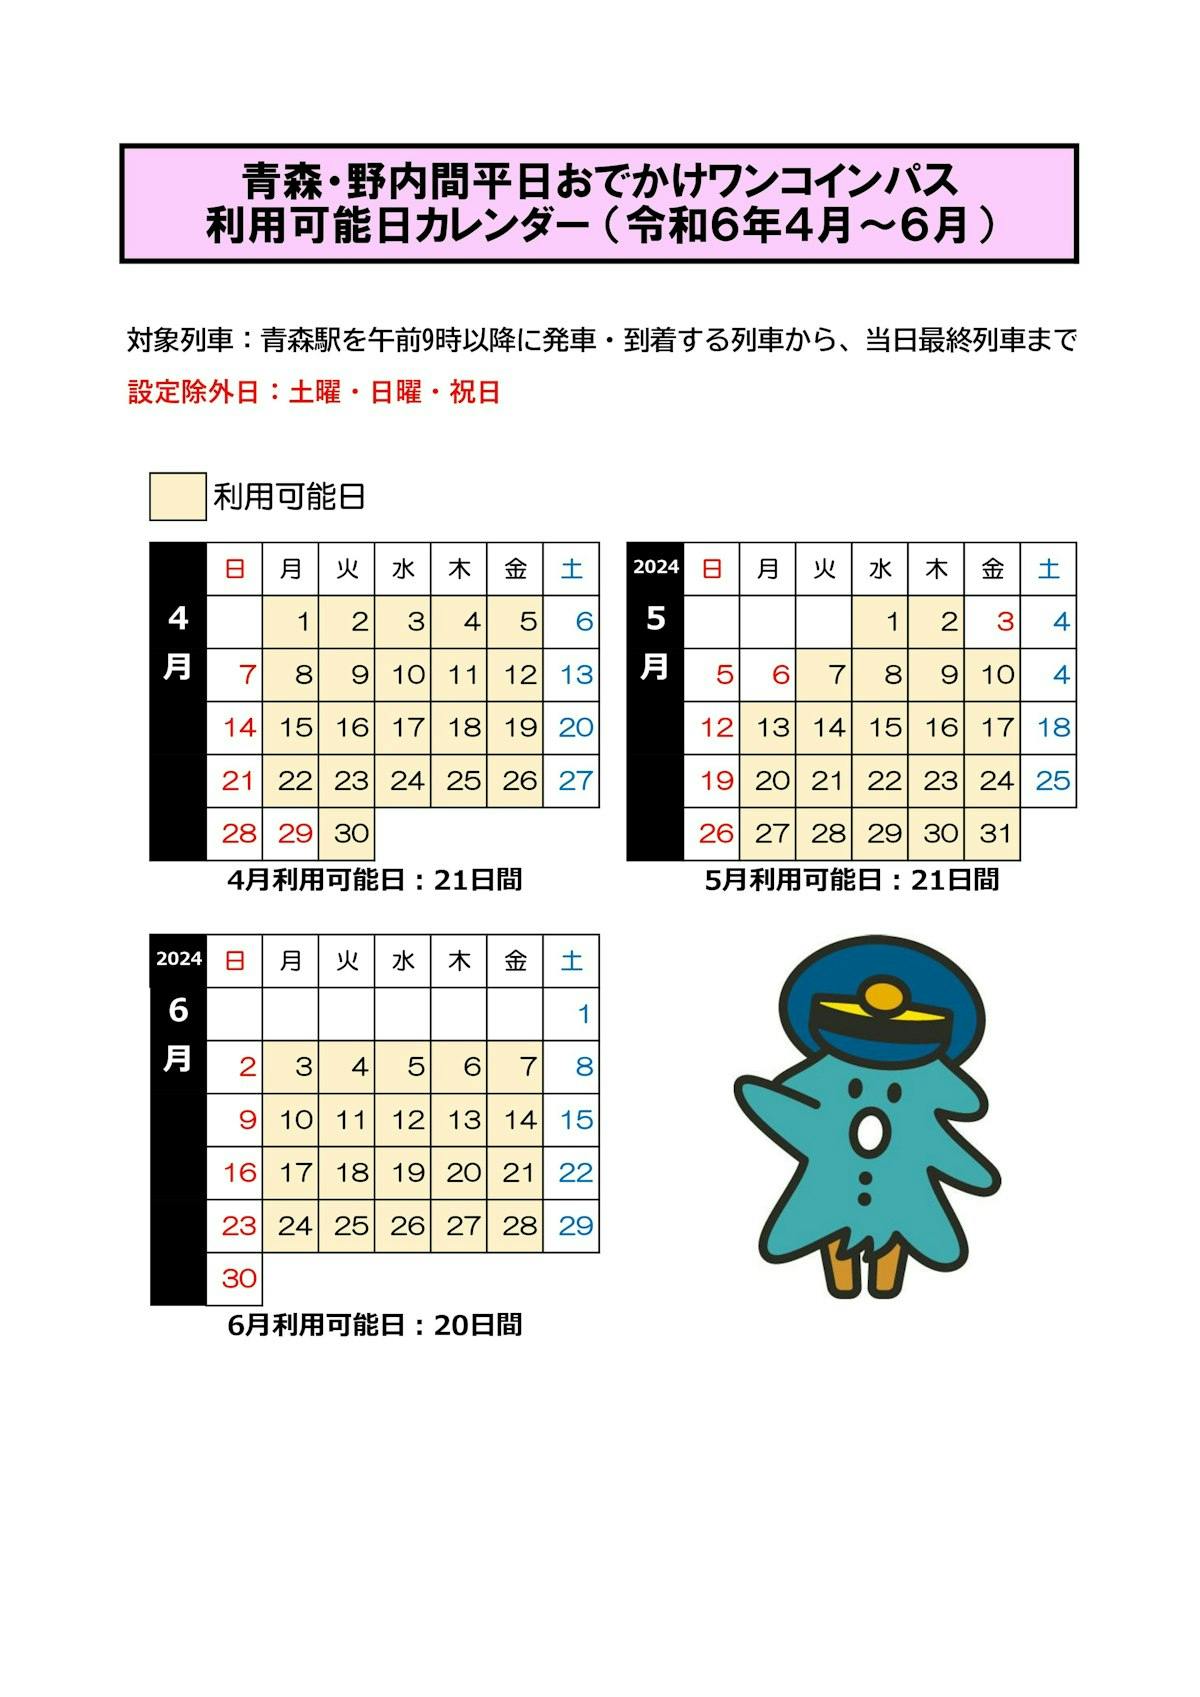 利用日カレンダー（４月～６月分）